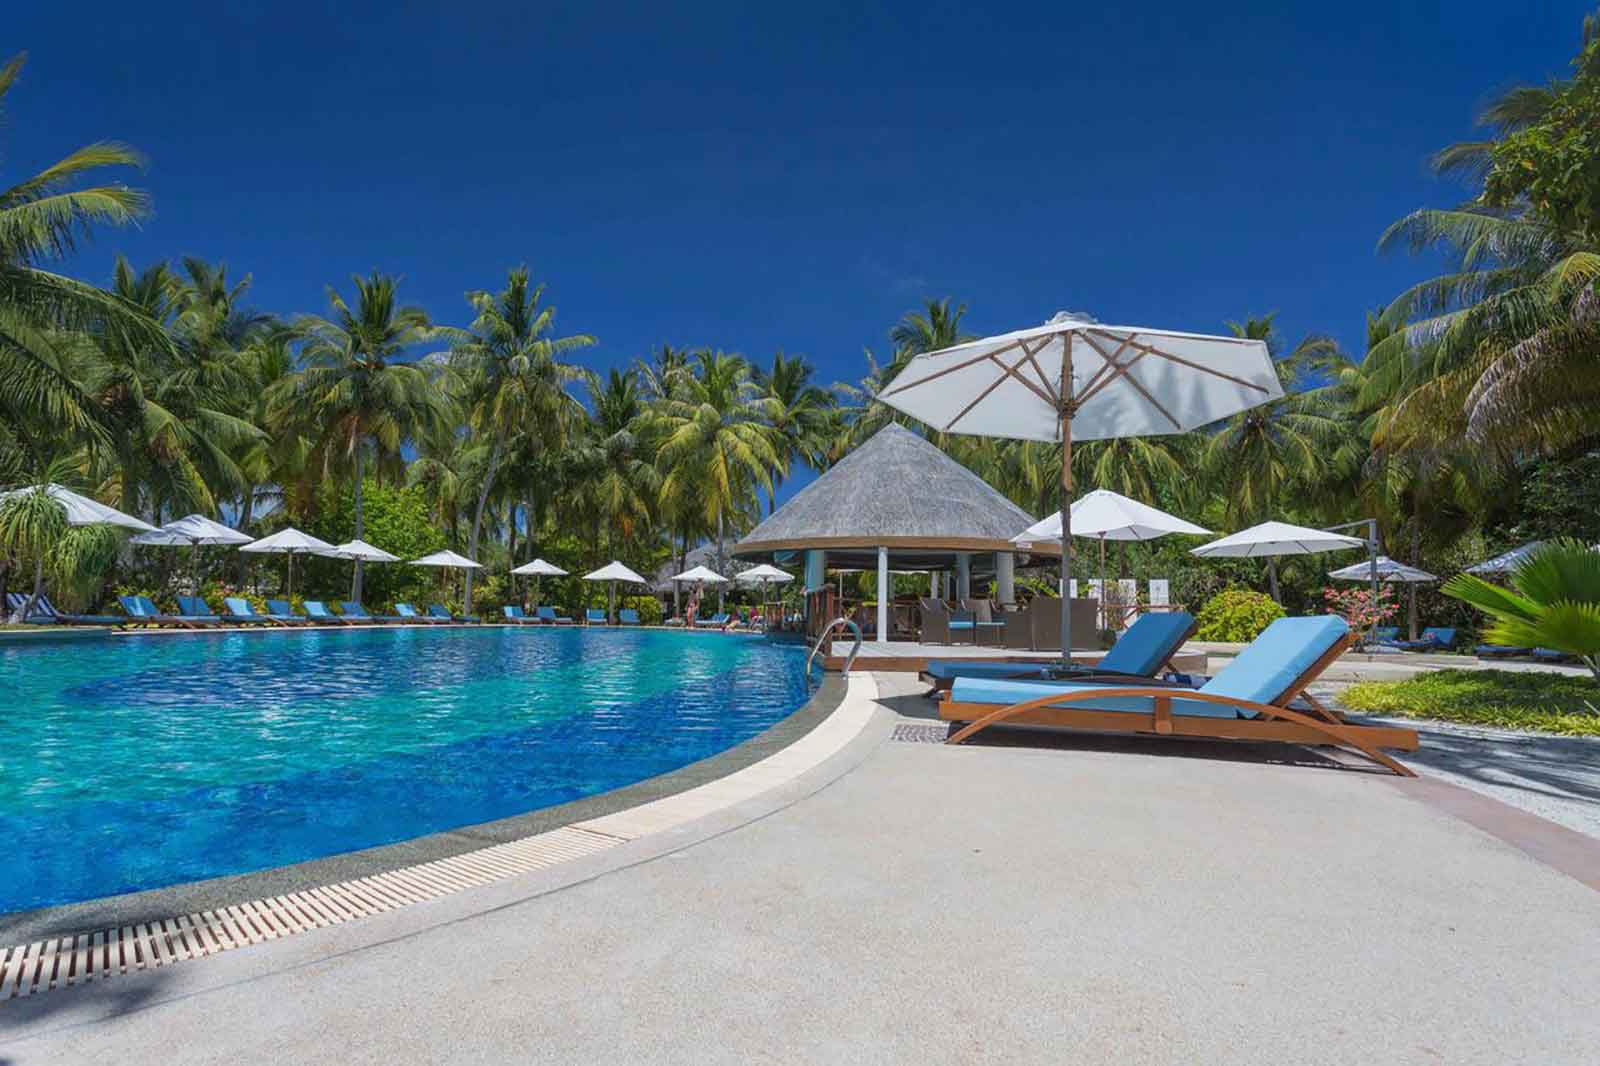 Bandos island resort 4. Мальдивы Bandos Maldives. Отель Bandos Island Resort & Spa 4*. Отель Bandos Maldives 4. Мальдивы Бандос Bandos Island Resort.